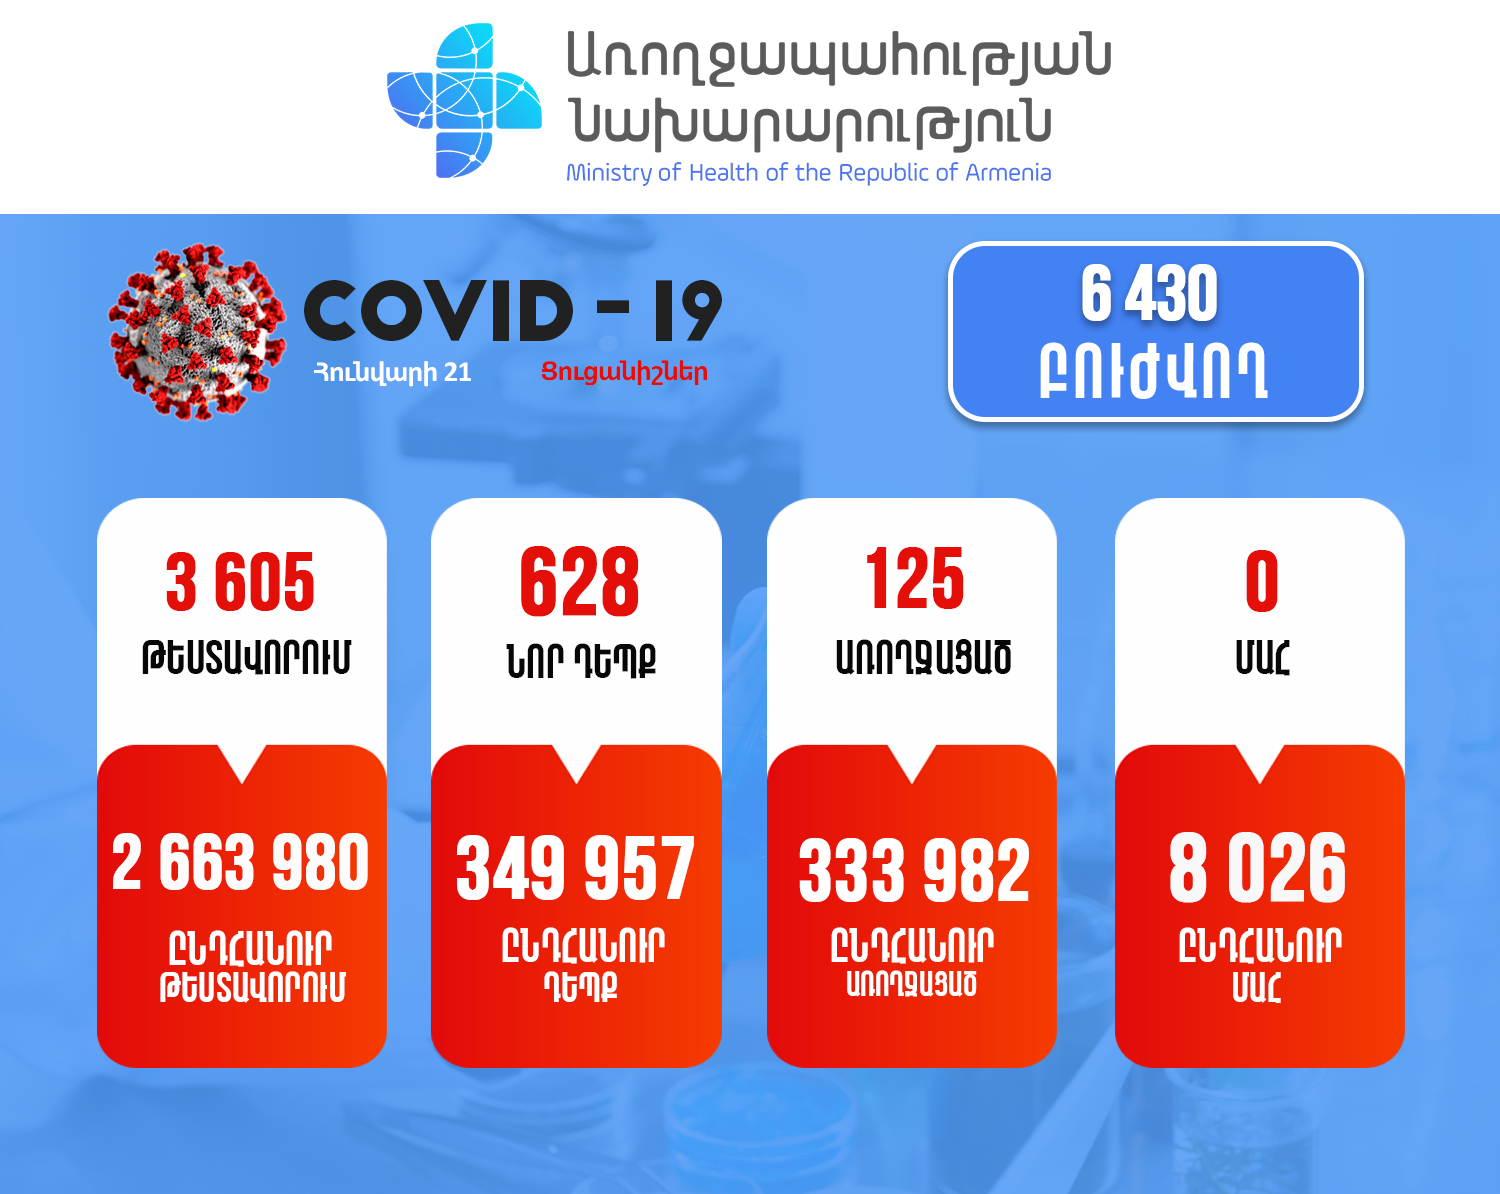 628 New COVID Cases in Armenia